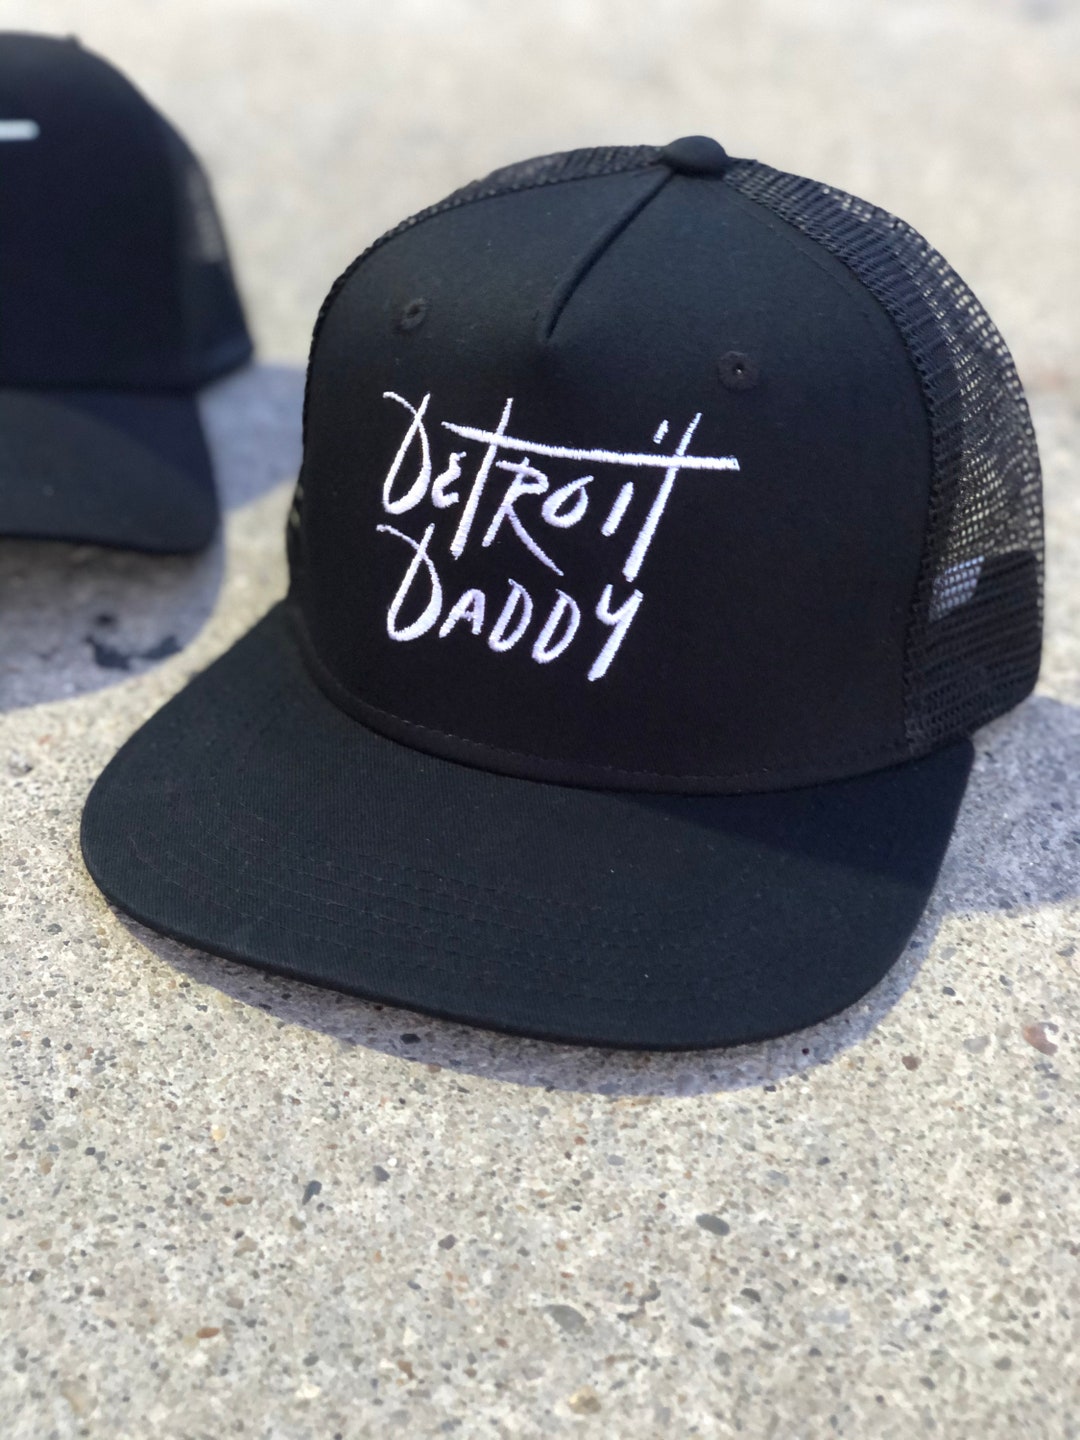 Detroit Daddy Snapback Hat - Etsy